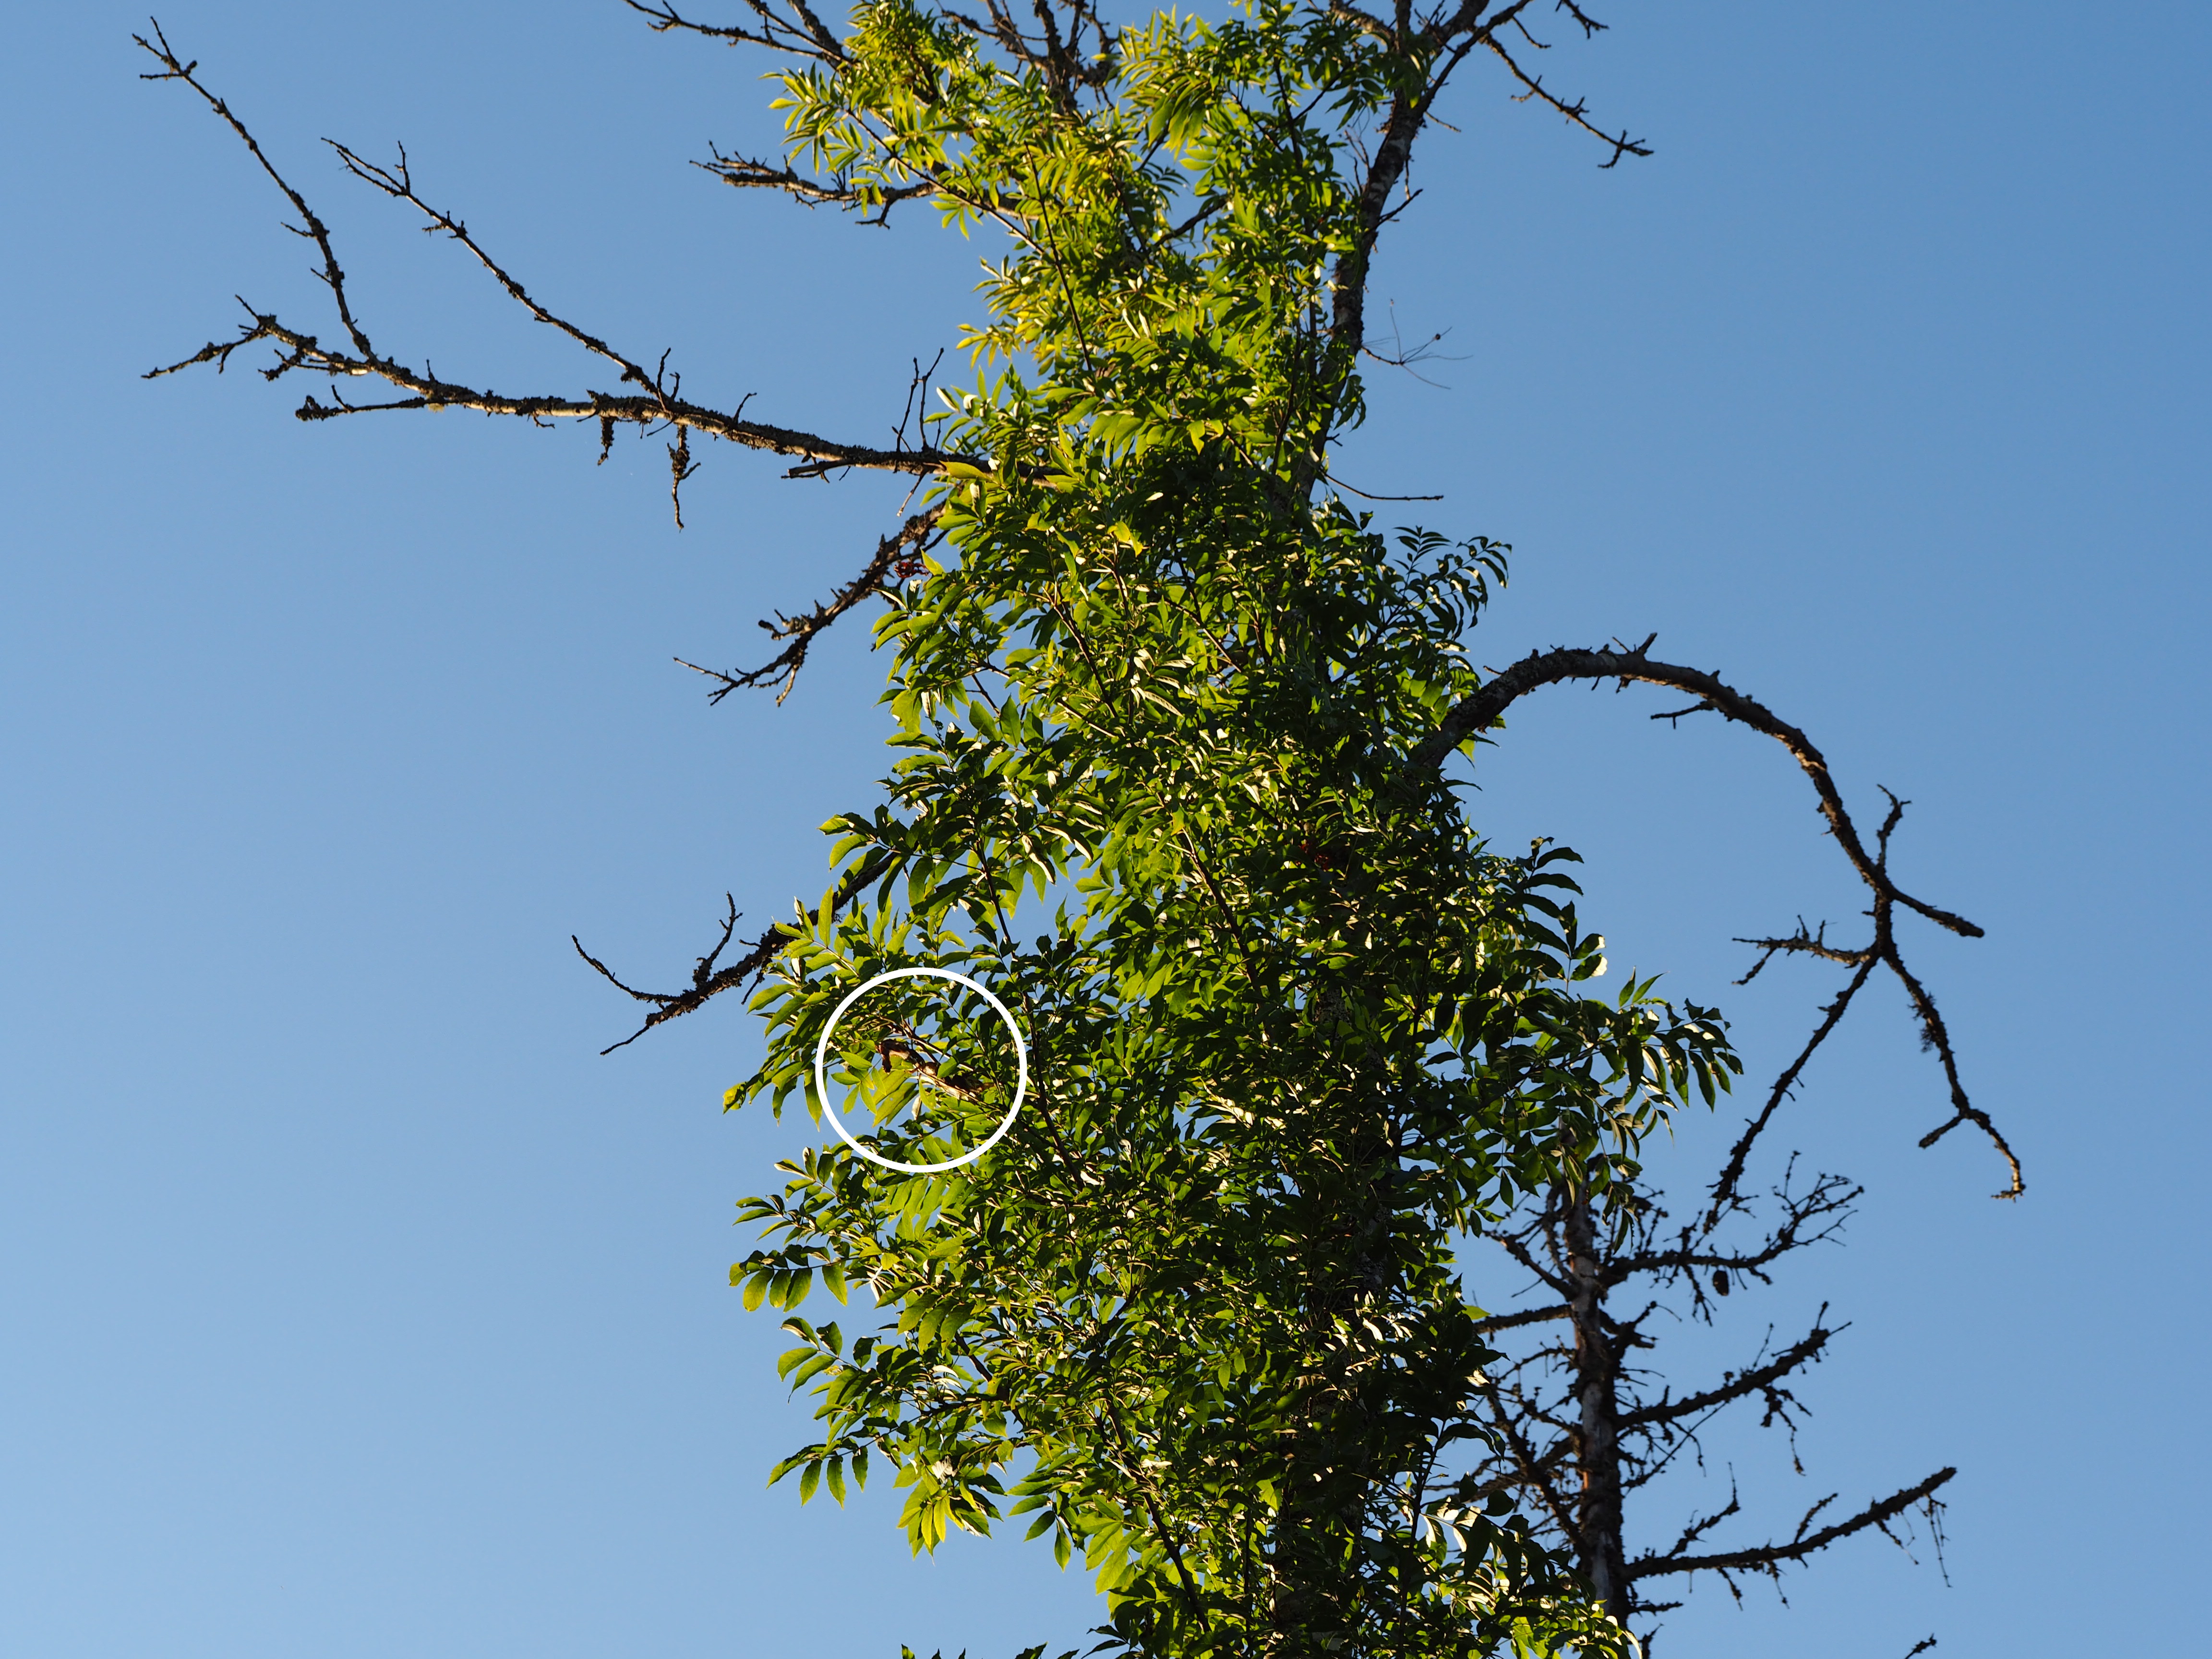 Dospělci hnědáska osikového se často pohybují v korunách stromů a samičky mohou klást snůšky poměrně vysoko. Zde housenčí hnízdo (zakroužkováno) ve Švédsku na vzrostlém jasanu, trpícím nekrózou, ve výšce asi 16 m. Valkrör, kraj Uppsala, září 2017. Foto Pavel Bína